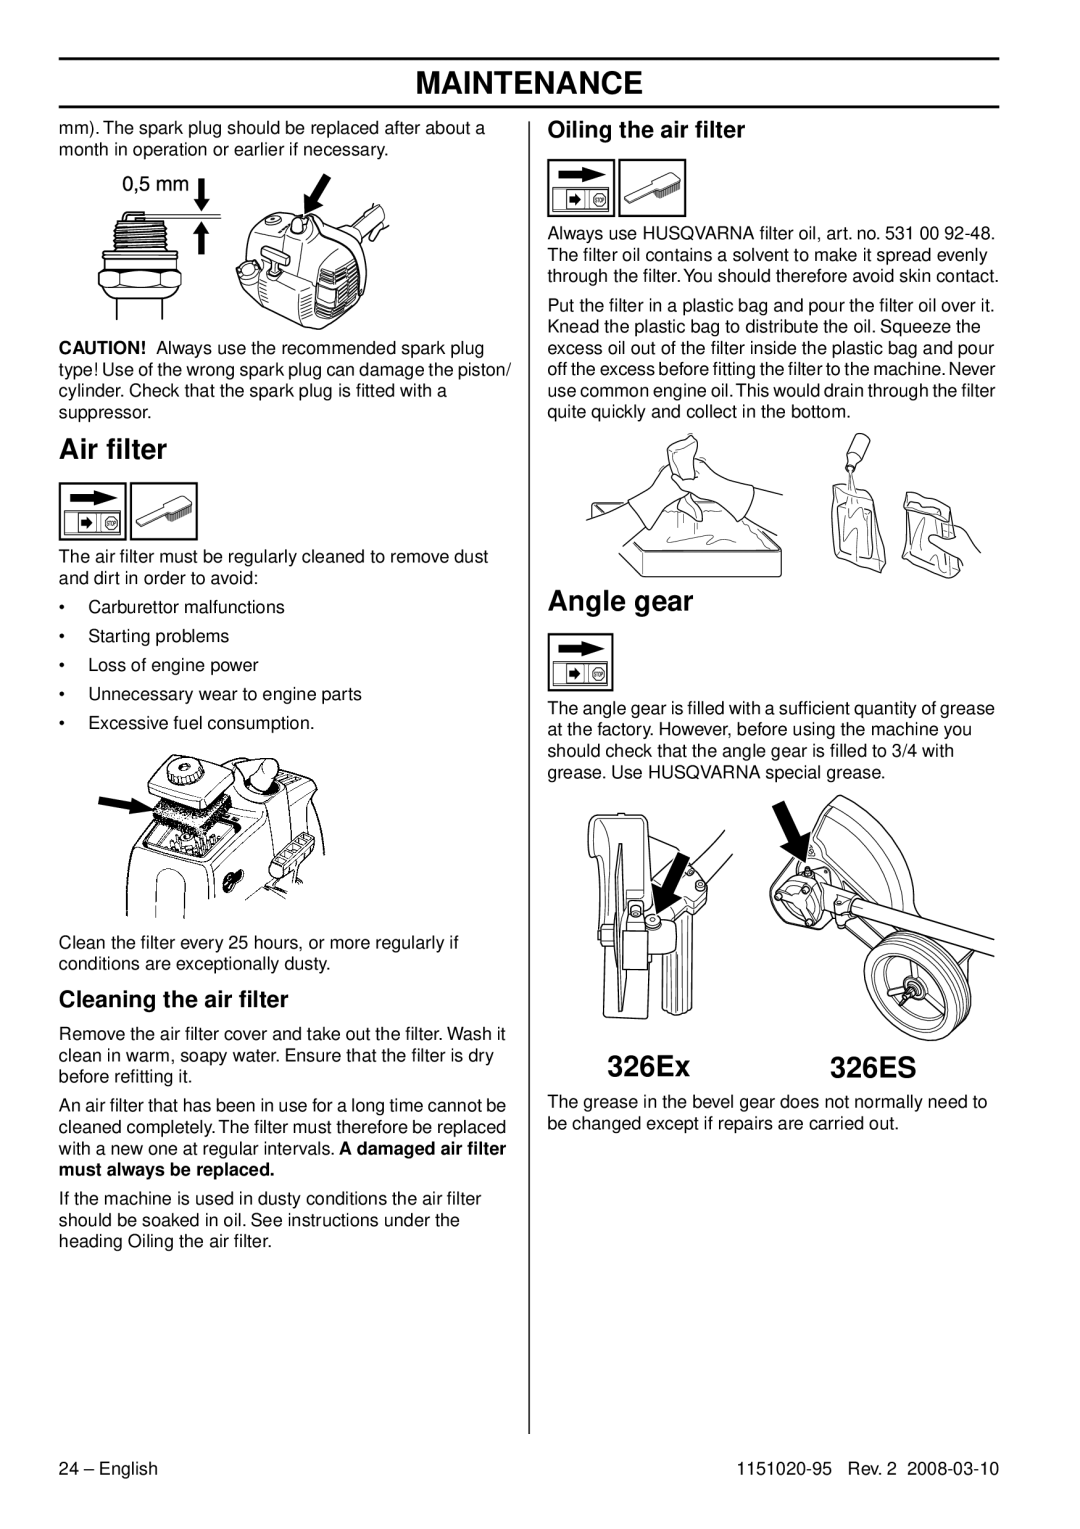 Husqvarna manual Air ﬁlter, Angle gear, 326Ex 326ES, Cleaning the air ﬁlter, Oiling the air ﬁlter, Maintenance 